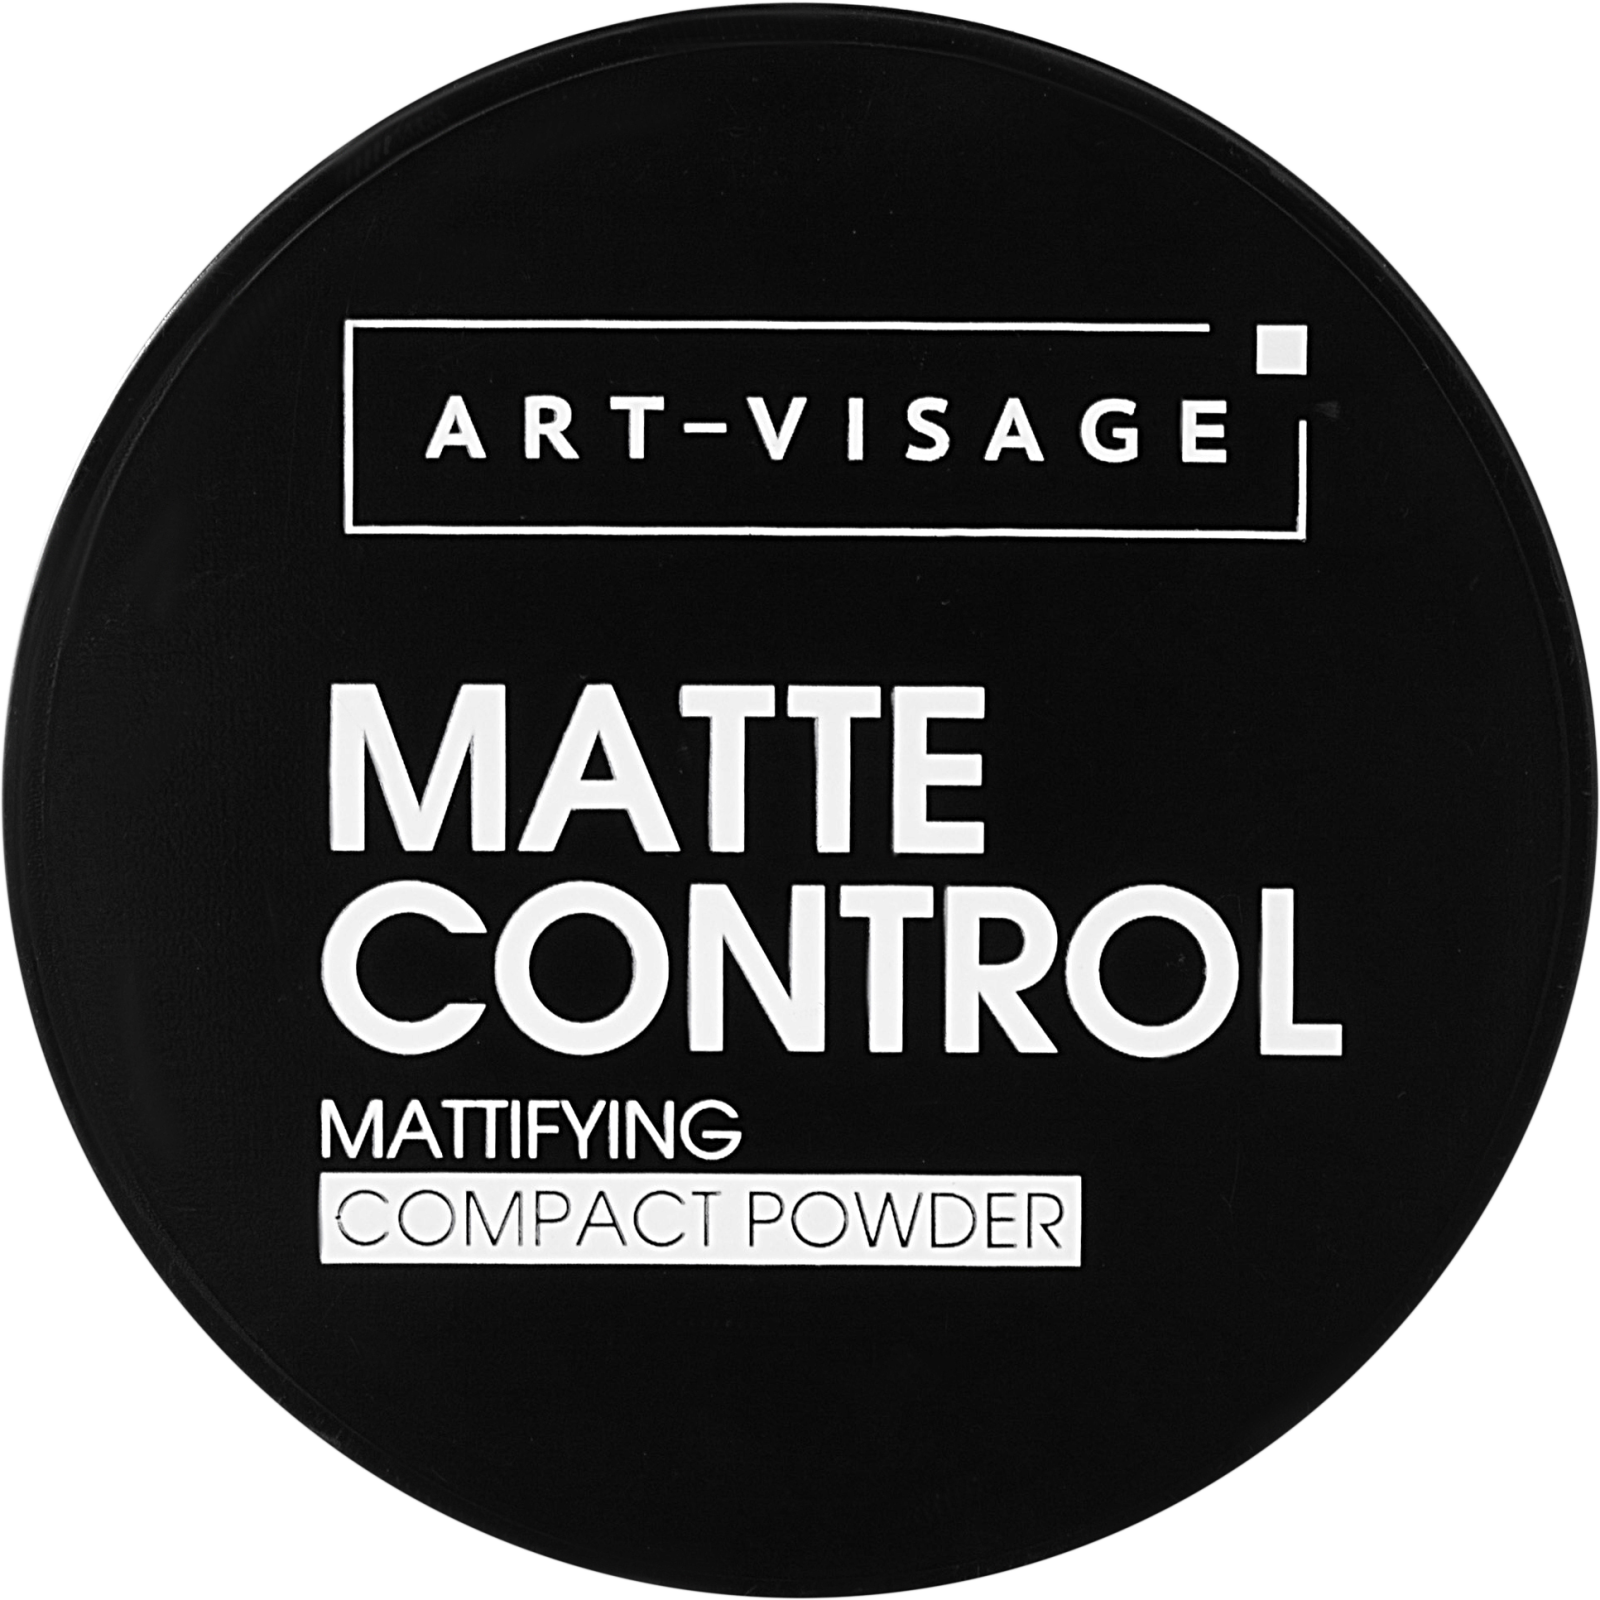 Пудра Art-Visage Matte Control компактная матирующая 102 7г